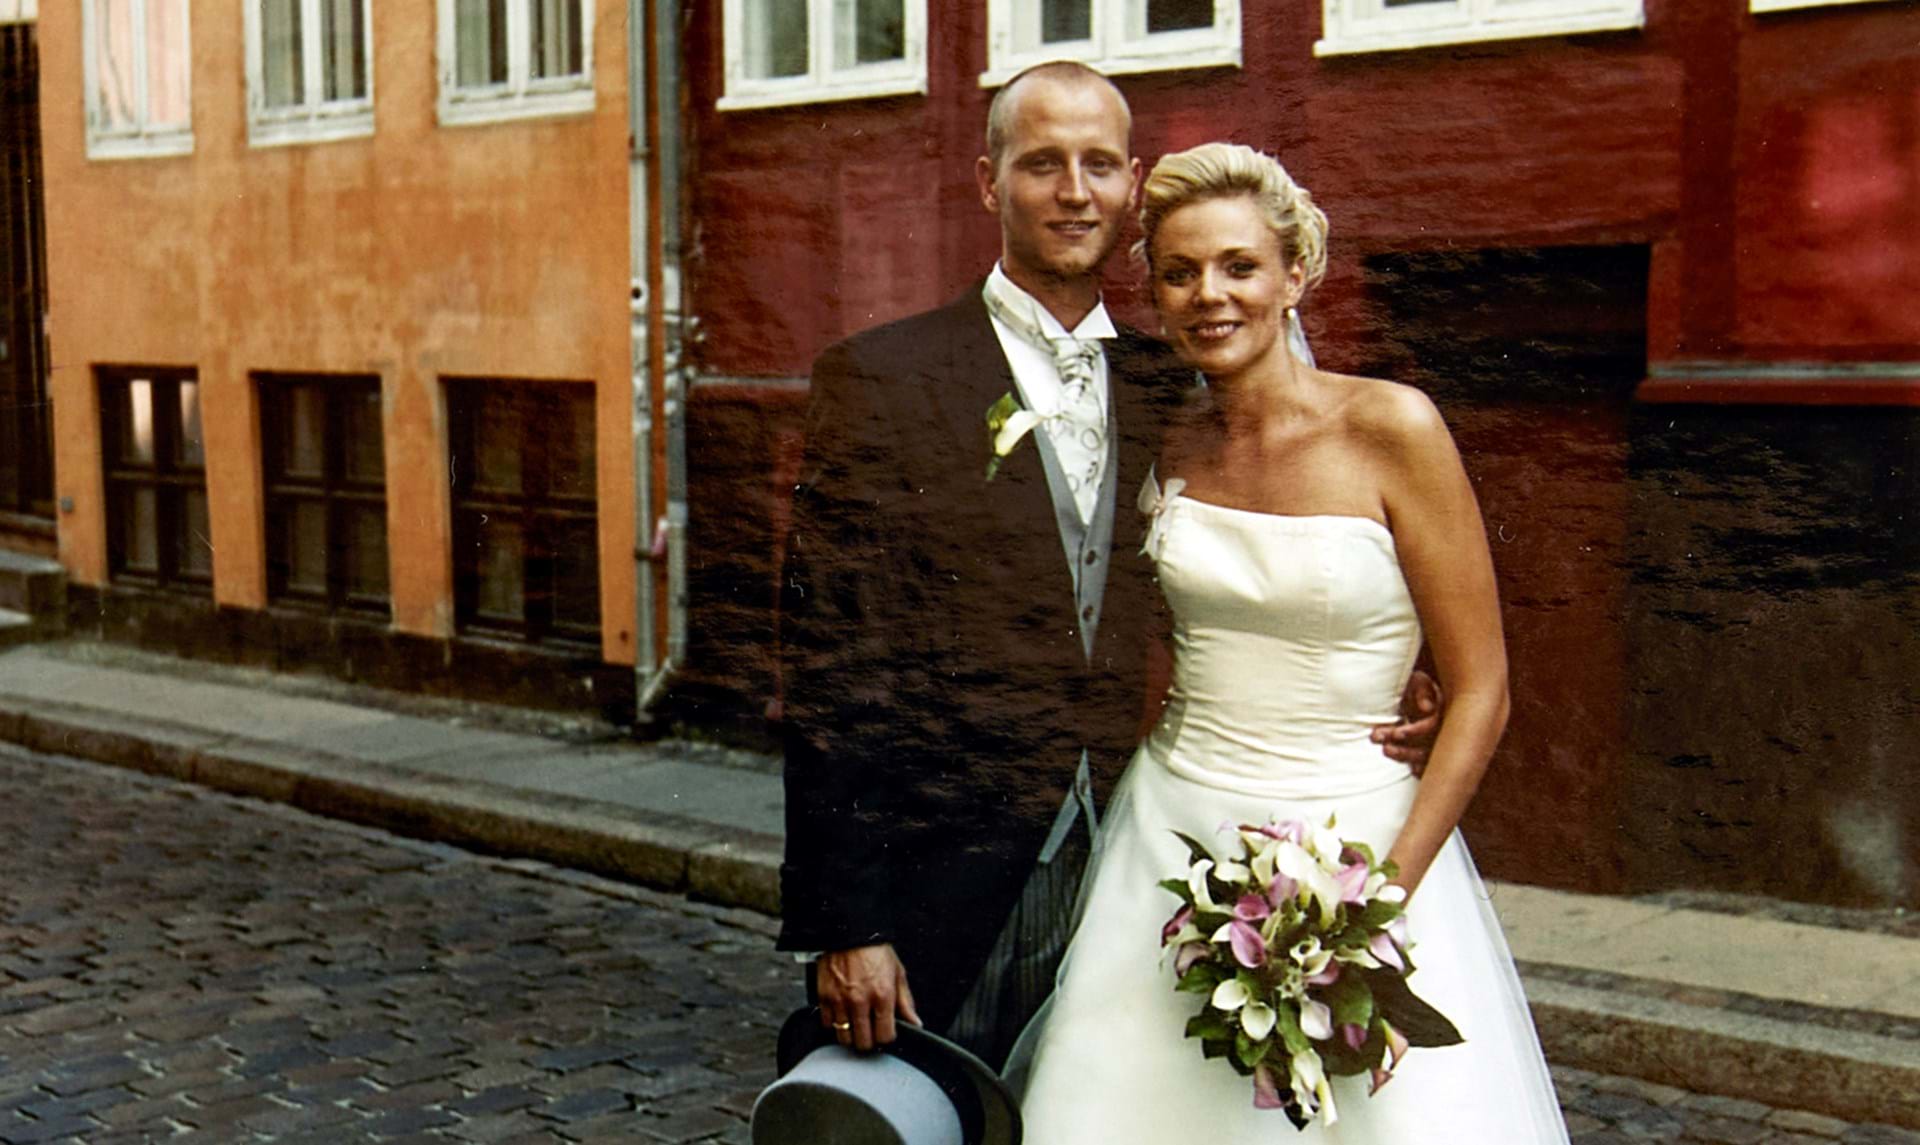 Narabar spektrum Insister Kom med til bryllup hos Lene og Anders Beier - ALT.dk